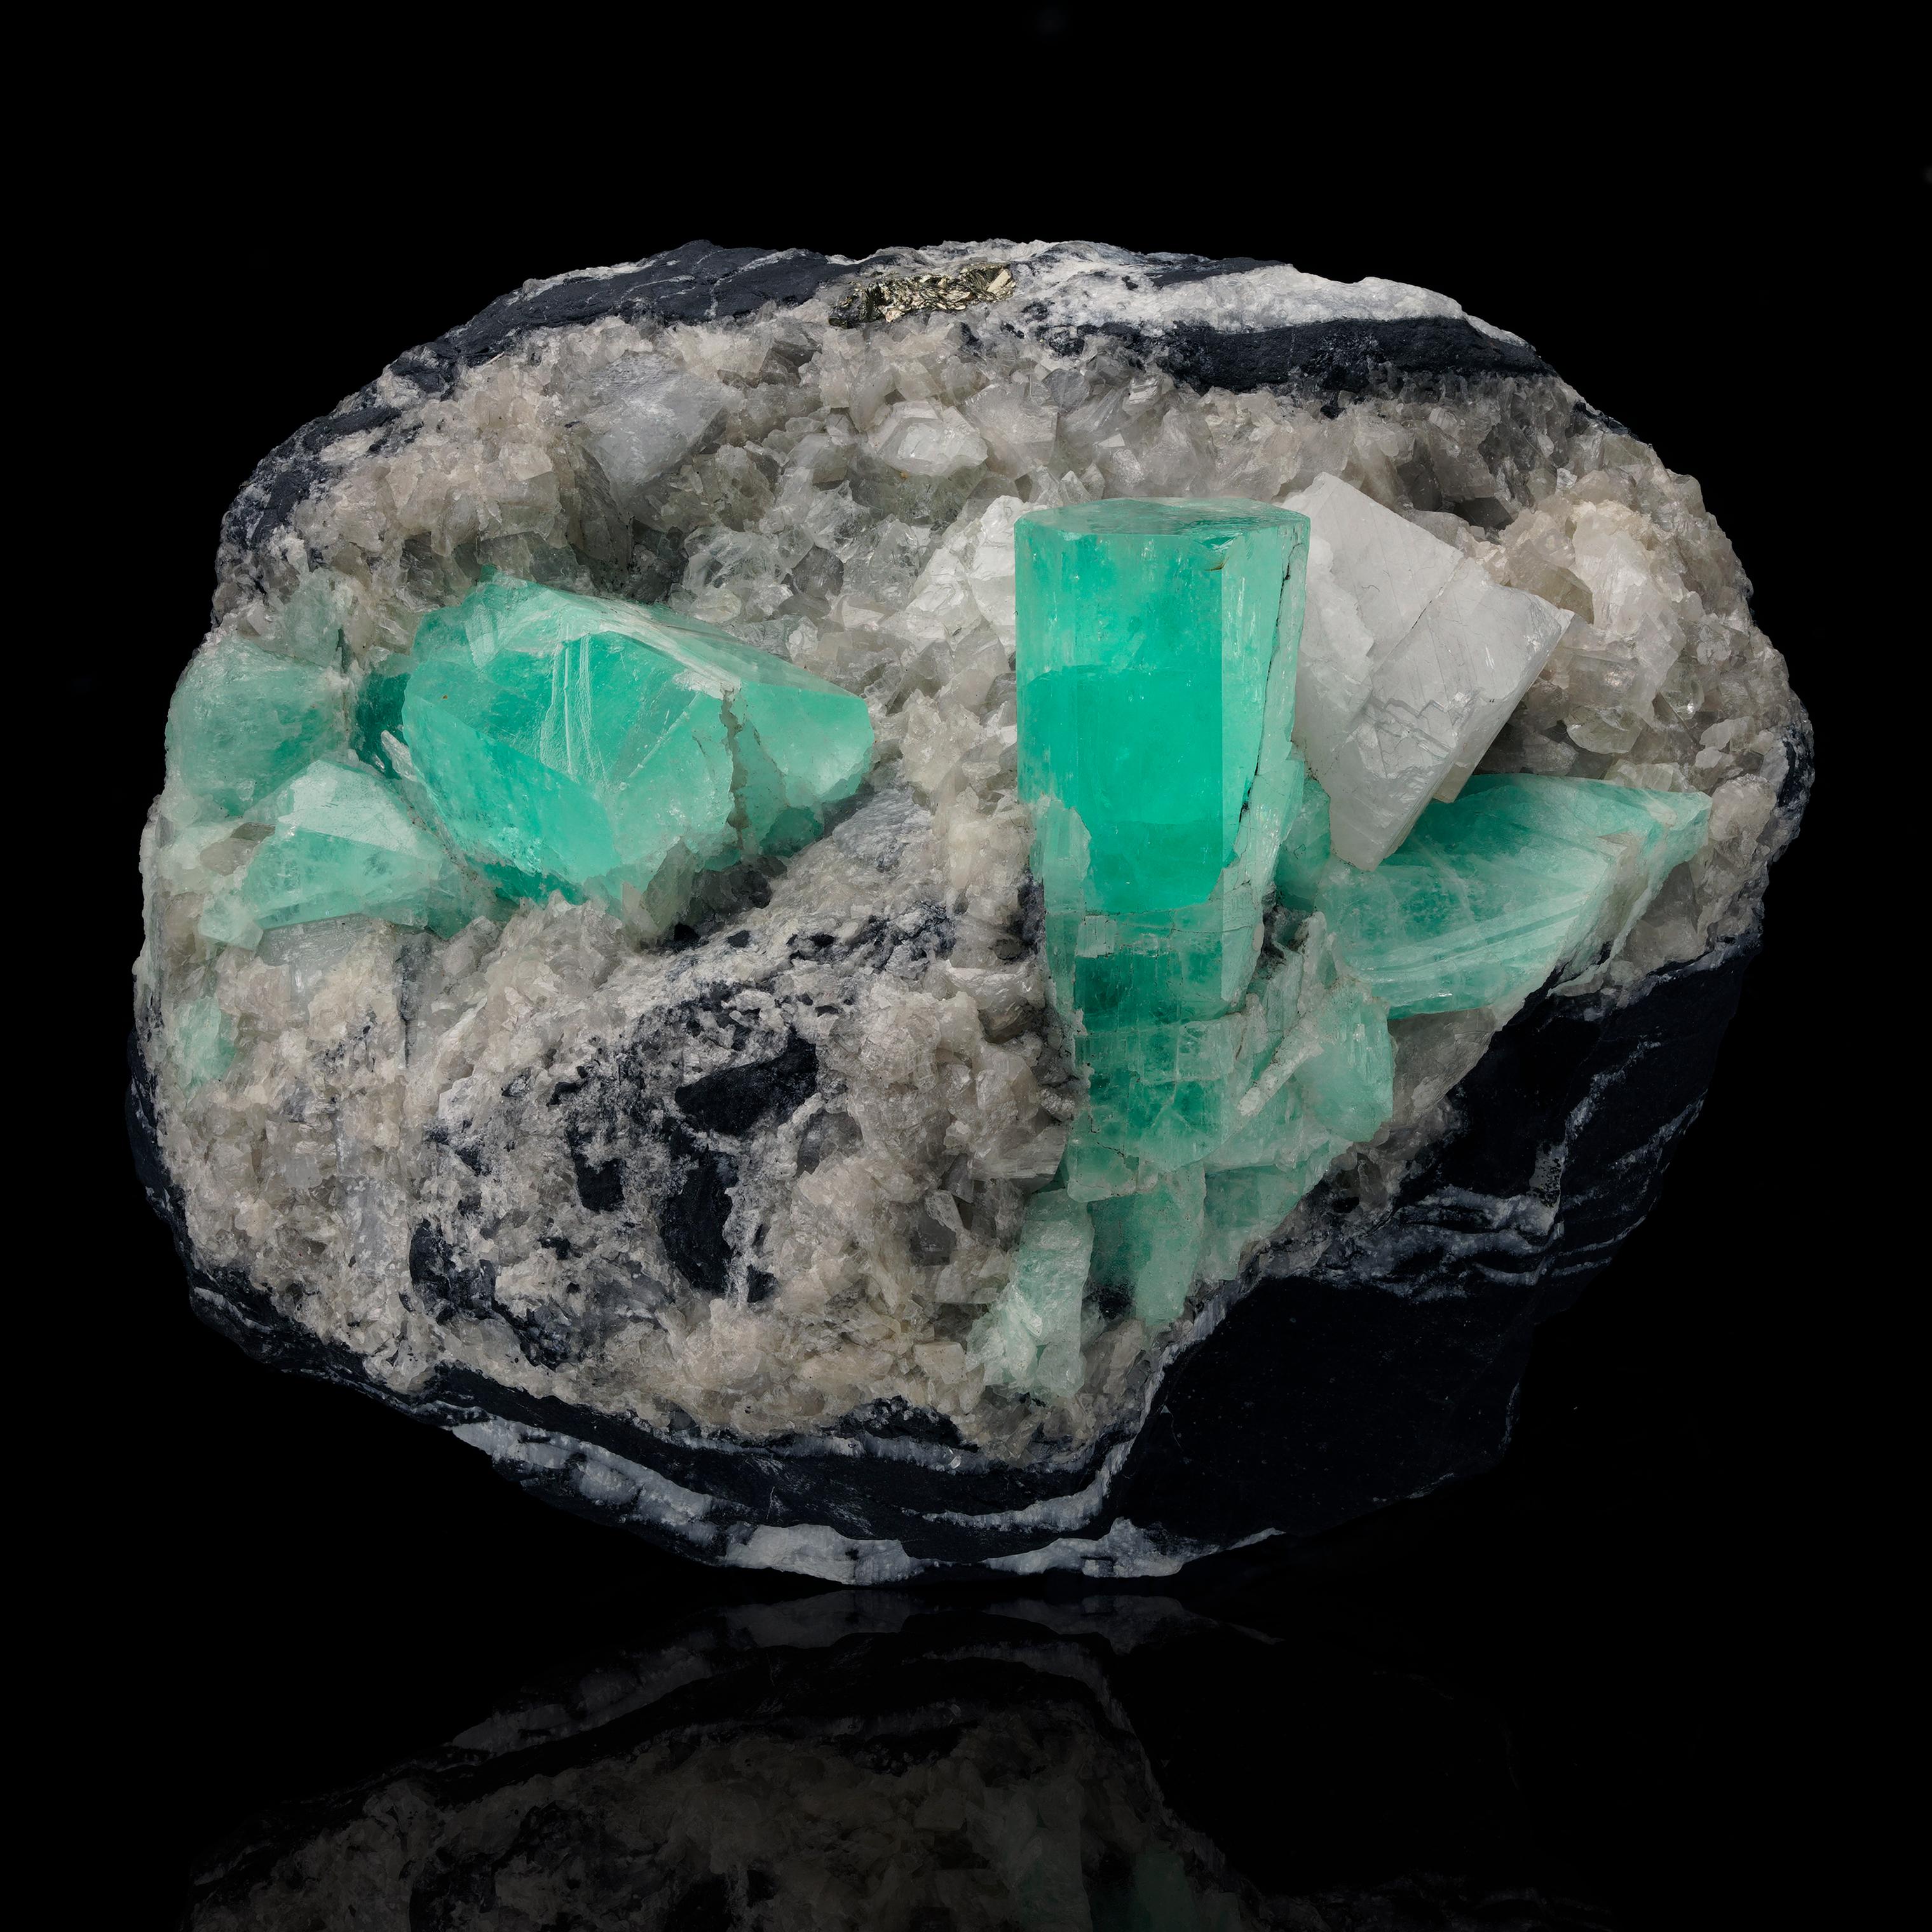 Ce spécimen combiné de 1,74 lb de qualité muséale provenant des mines d'émeraude de Muzo en Colombie présente deux grands cristaux d'émeraude magnifiquement formés - chacun mesurant environ 1,5 pouce de long et le plus grand des deux cristaux